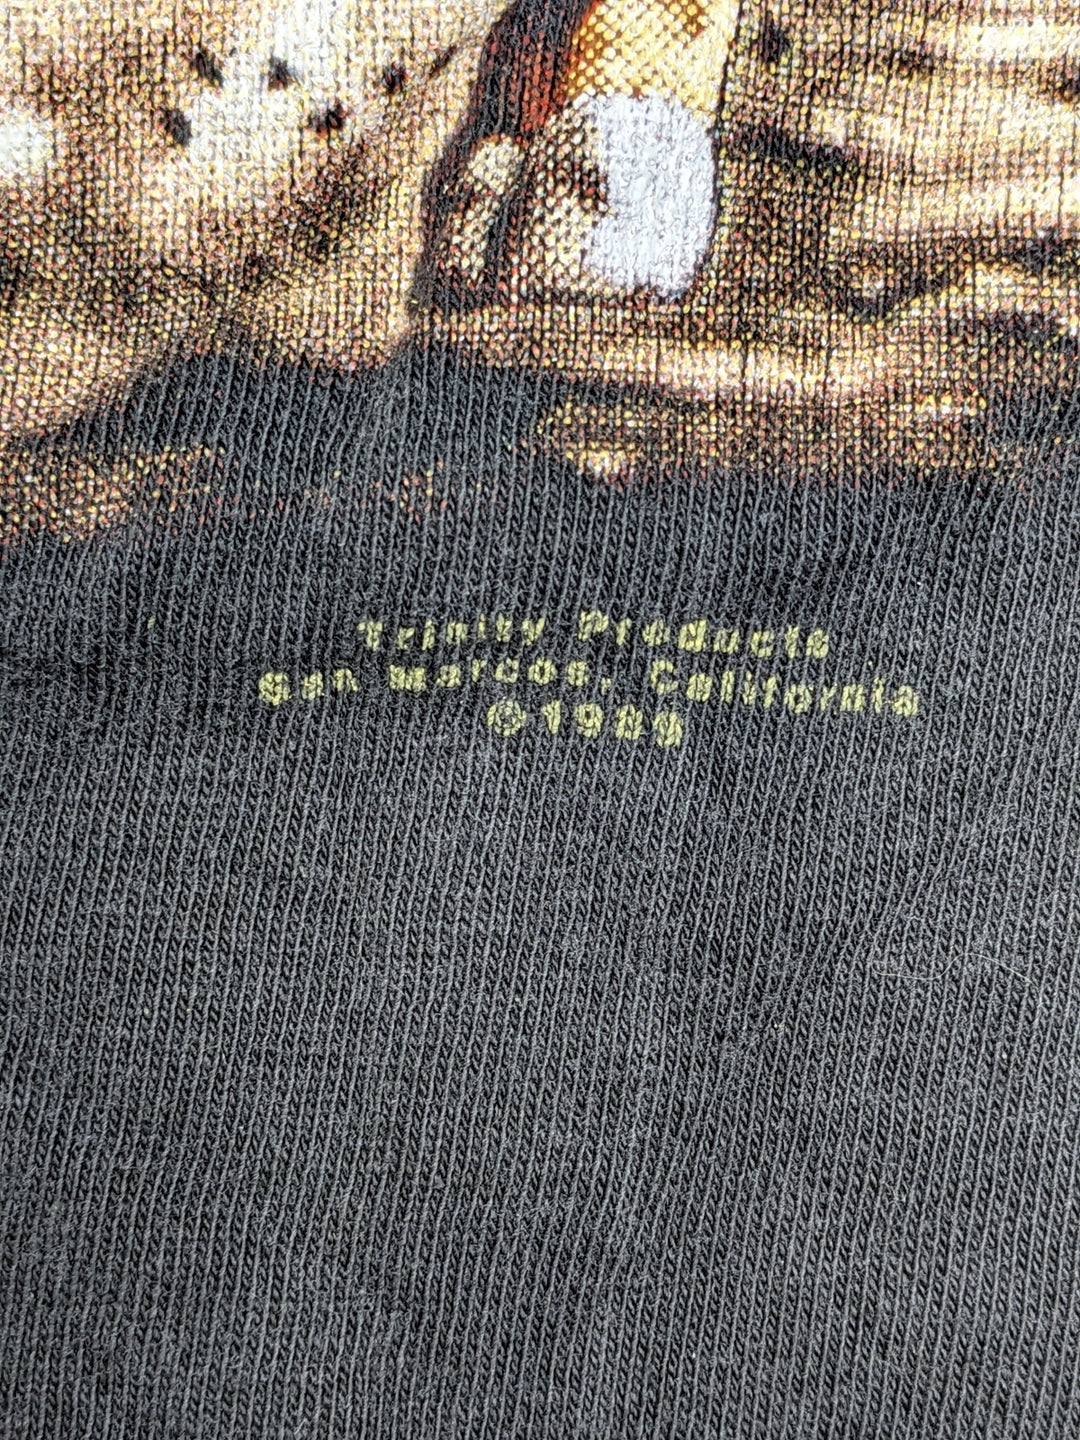 1989 3D Emblem T-Shirt 1 pc 1 lb C0123211 - Raghouse